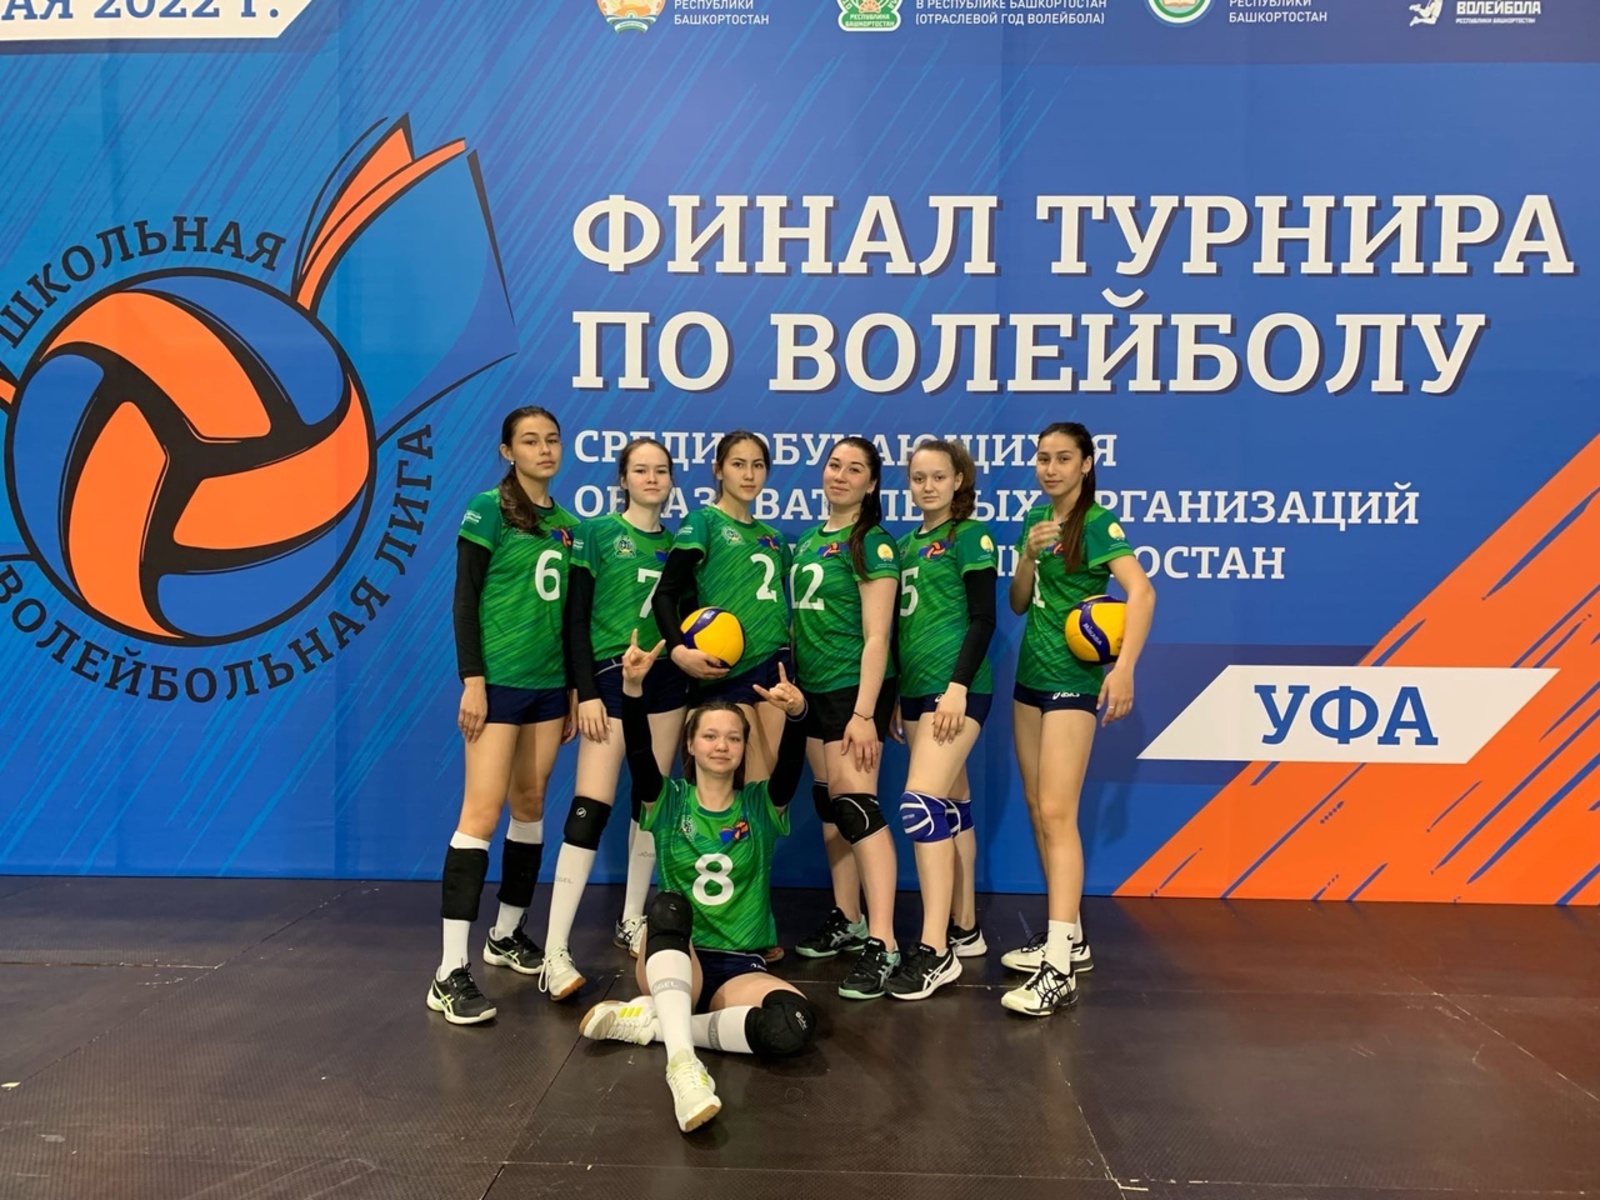 Янаульские гимназистки стали чемпионками Башкирии по волейболу